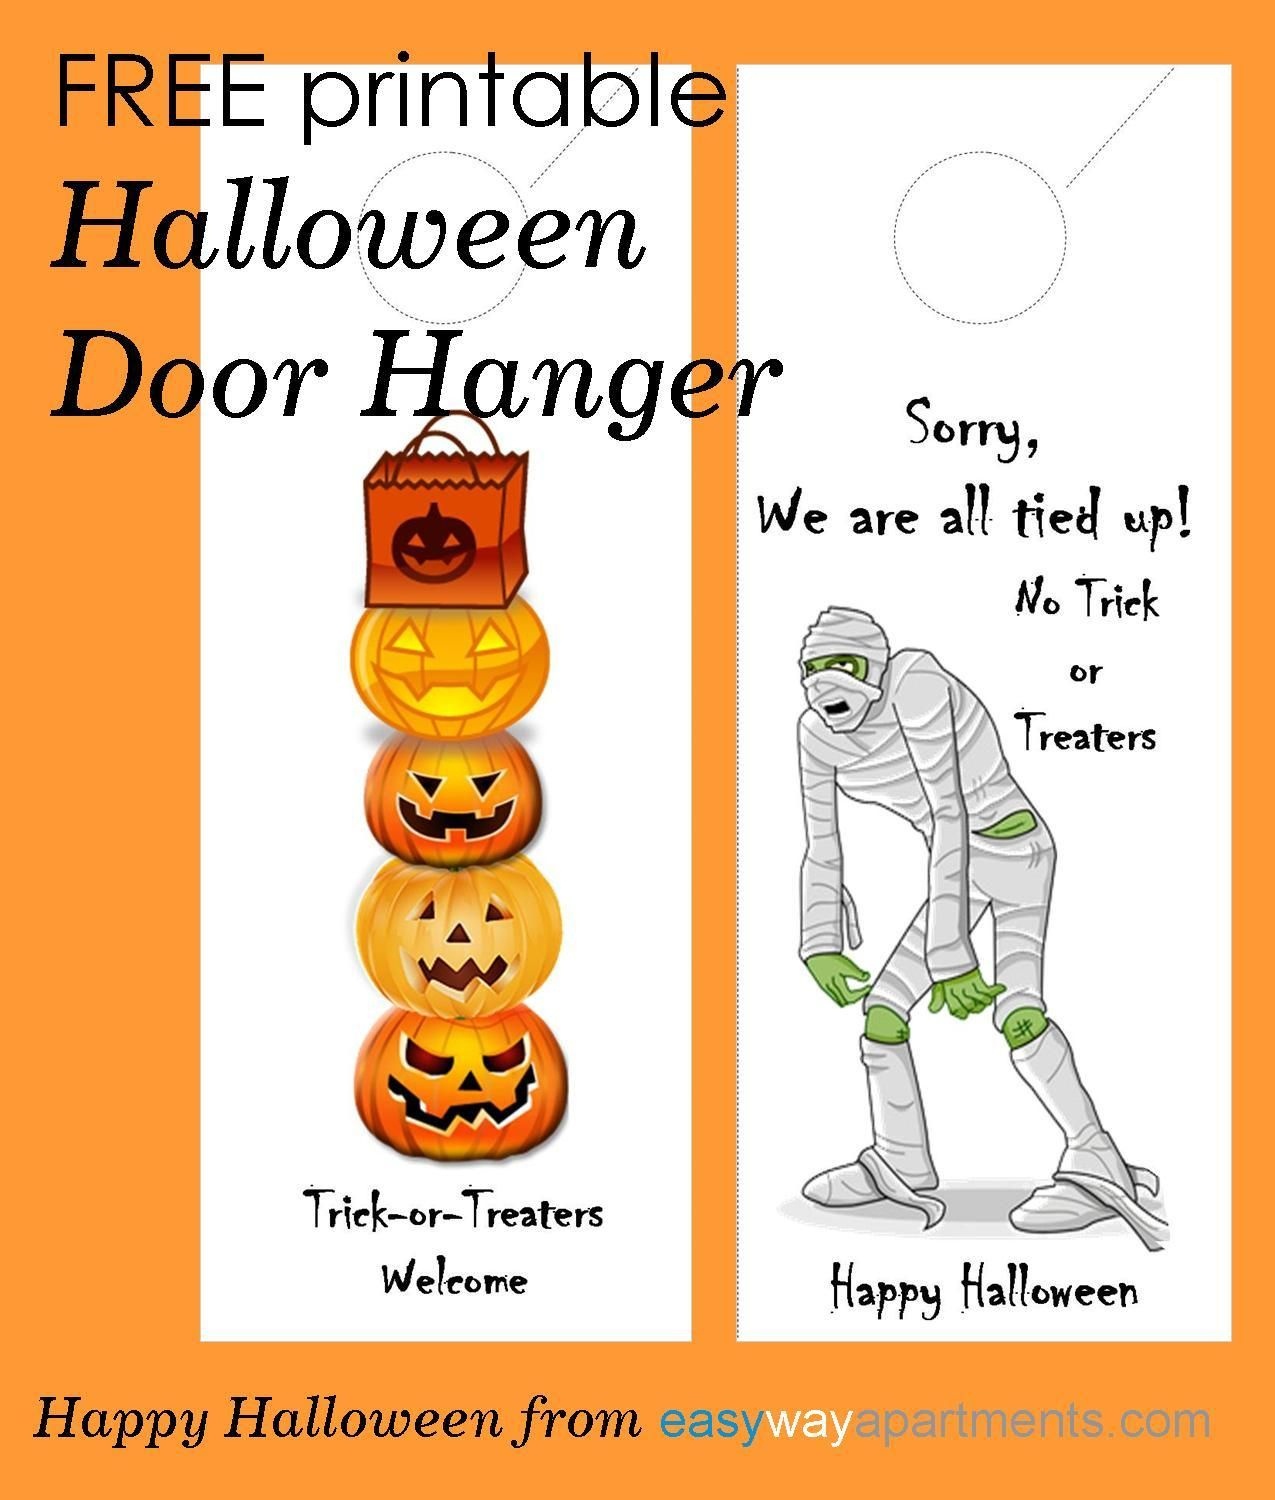 Free Printable Halloween Door Hanger For Your Apartment Community - Halloween Door Hangers Free Printable